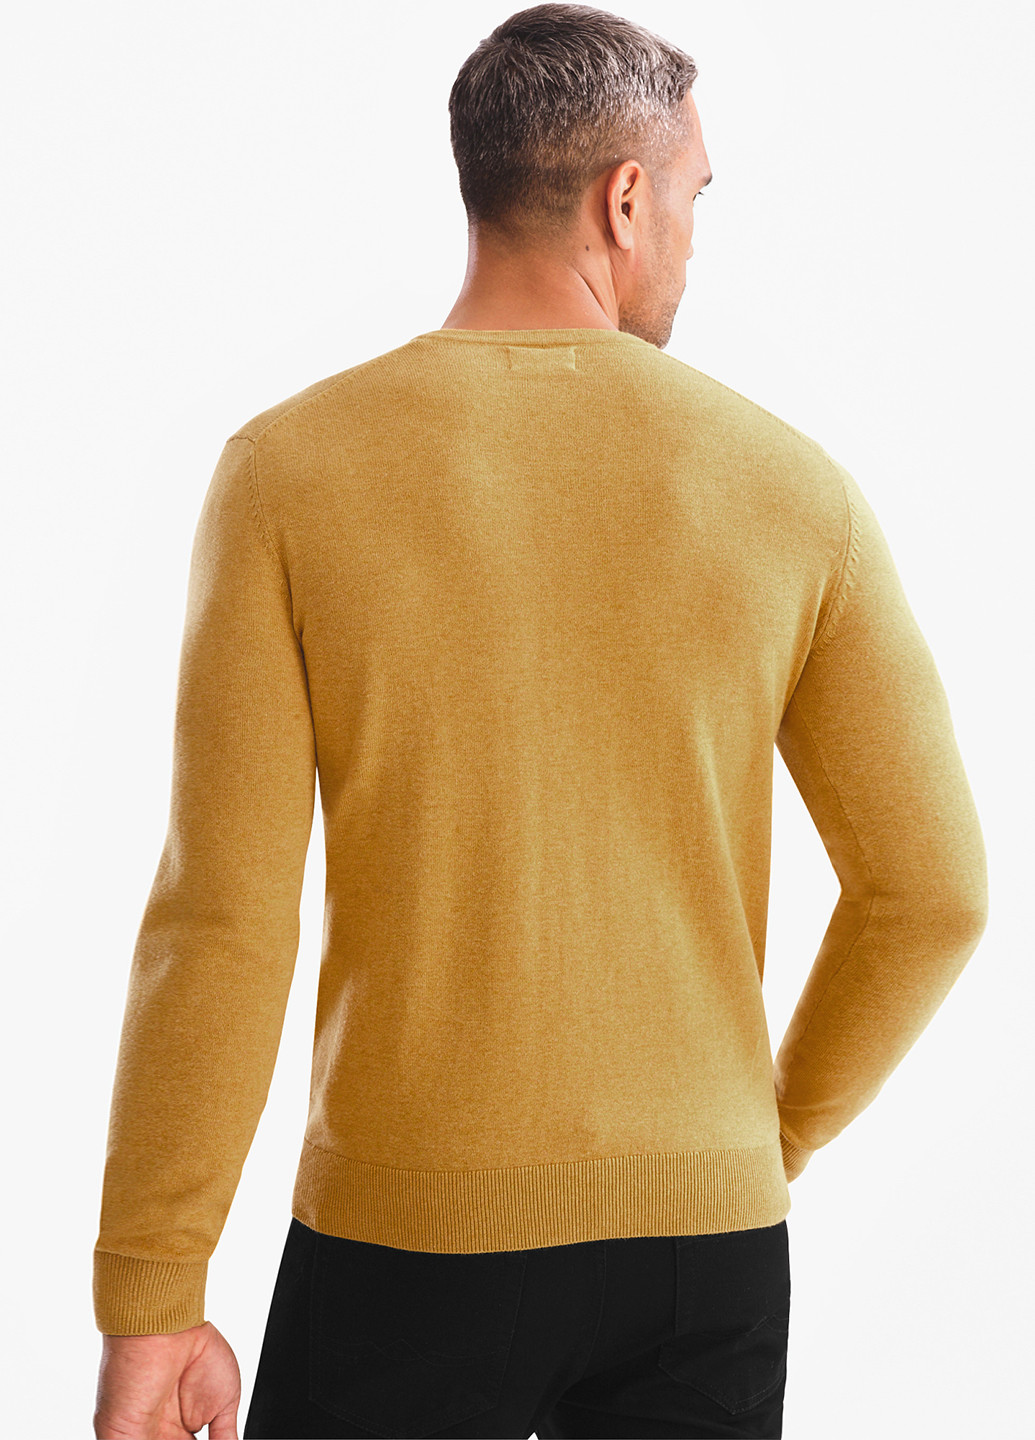 Желтый демисезонный пуловер пуловер C&A